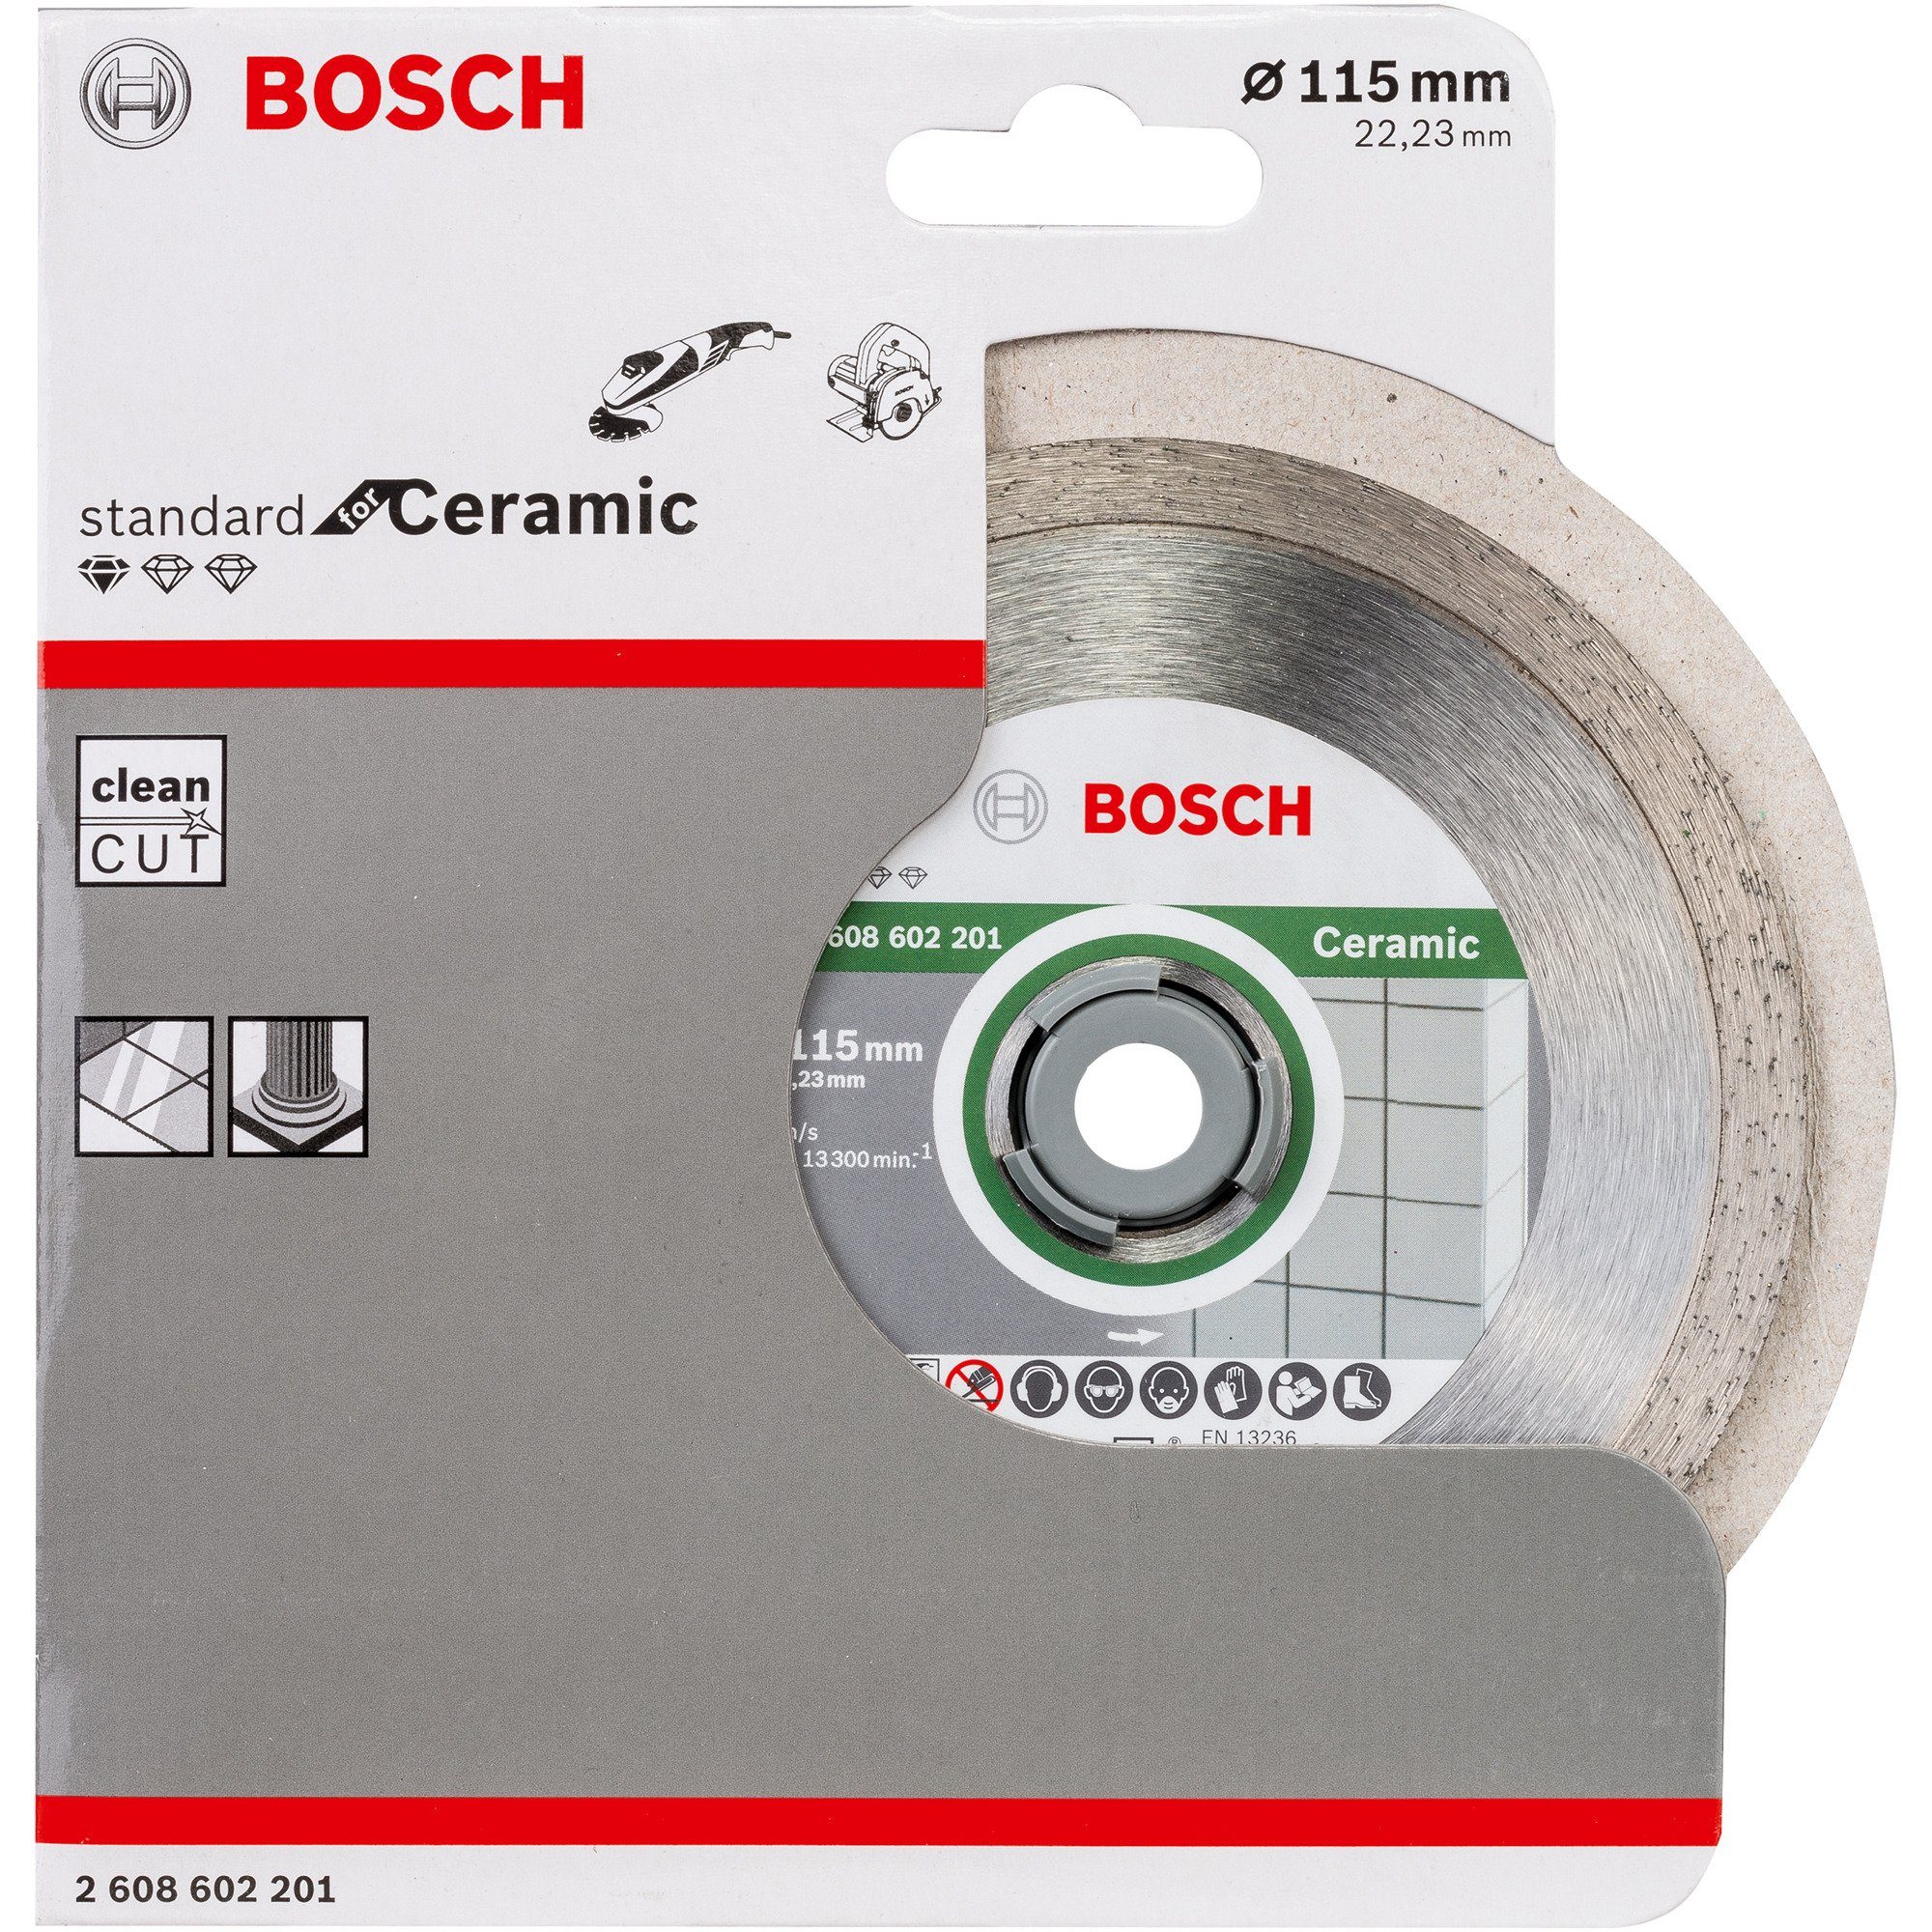 Standard BOSCH Bosch Trennscheibe Diamanttrennscheibe Professional